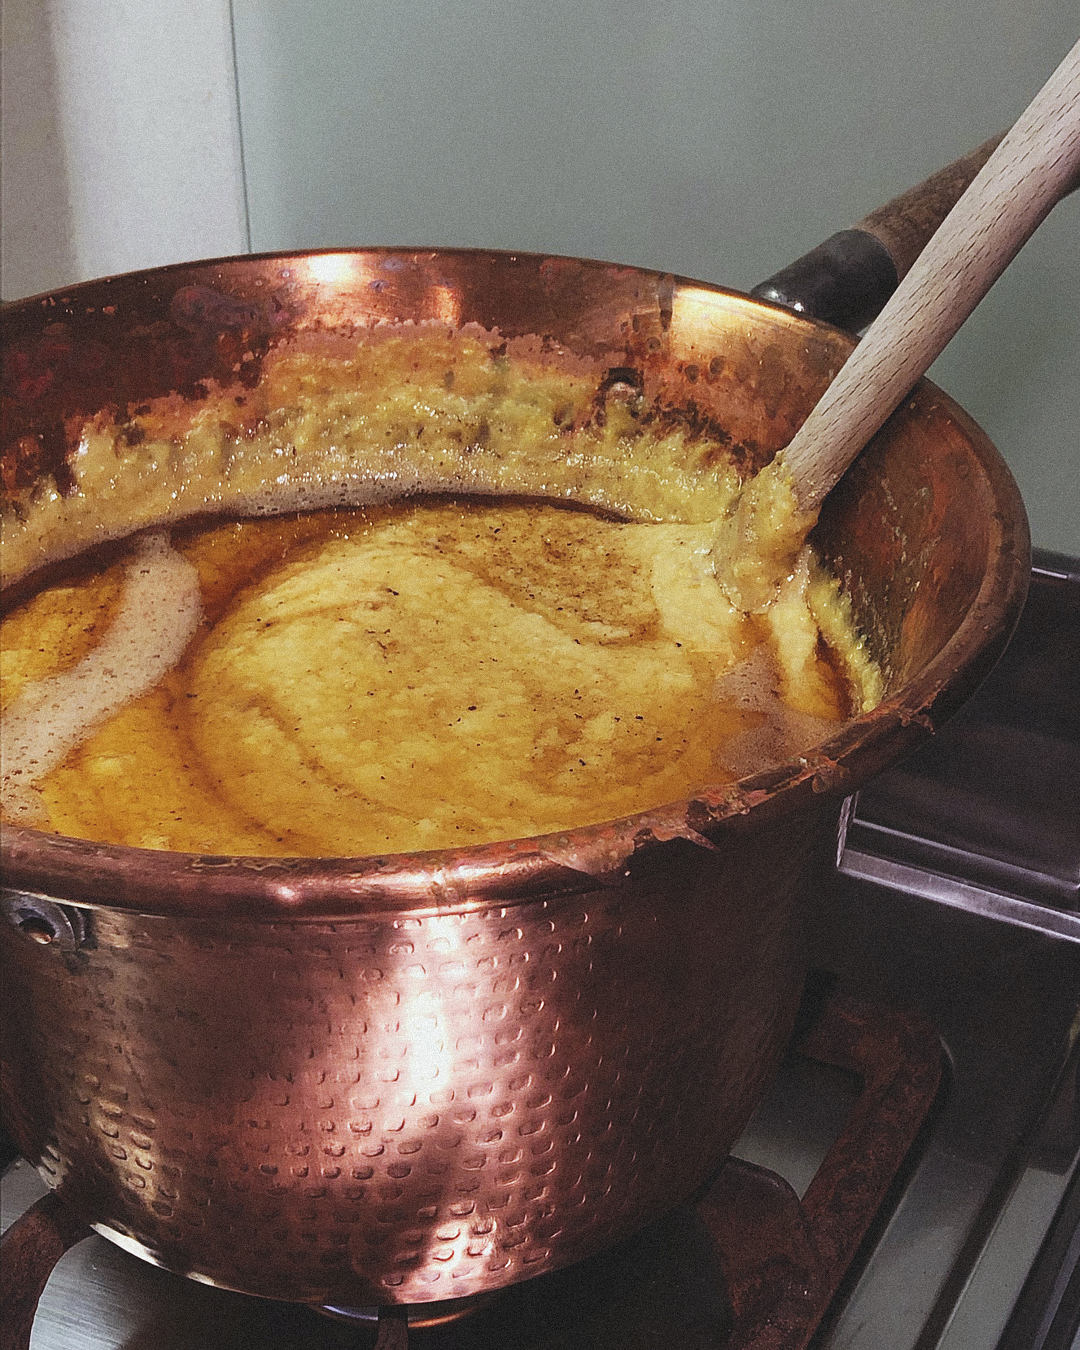 caseificio rosso formaggi biella piemonte polenta concia oropa ricetta originale degustazione